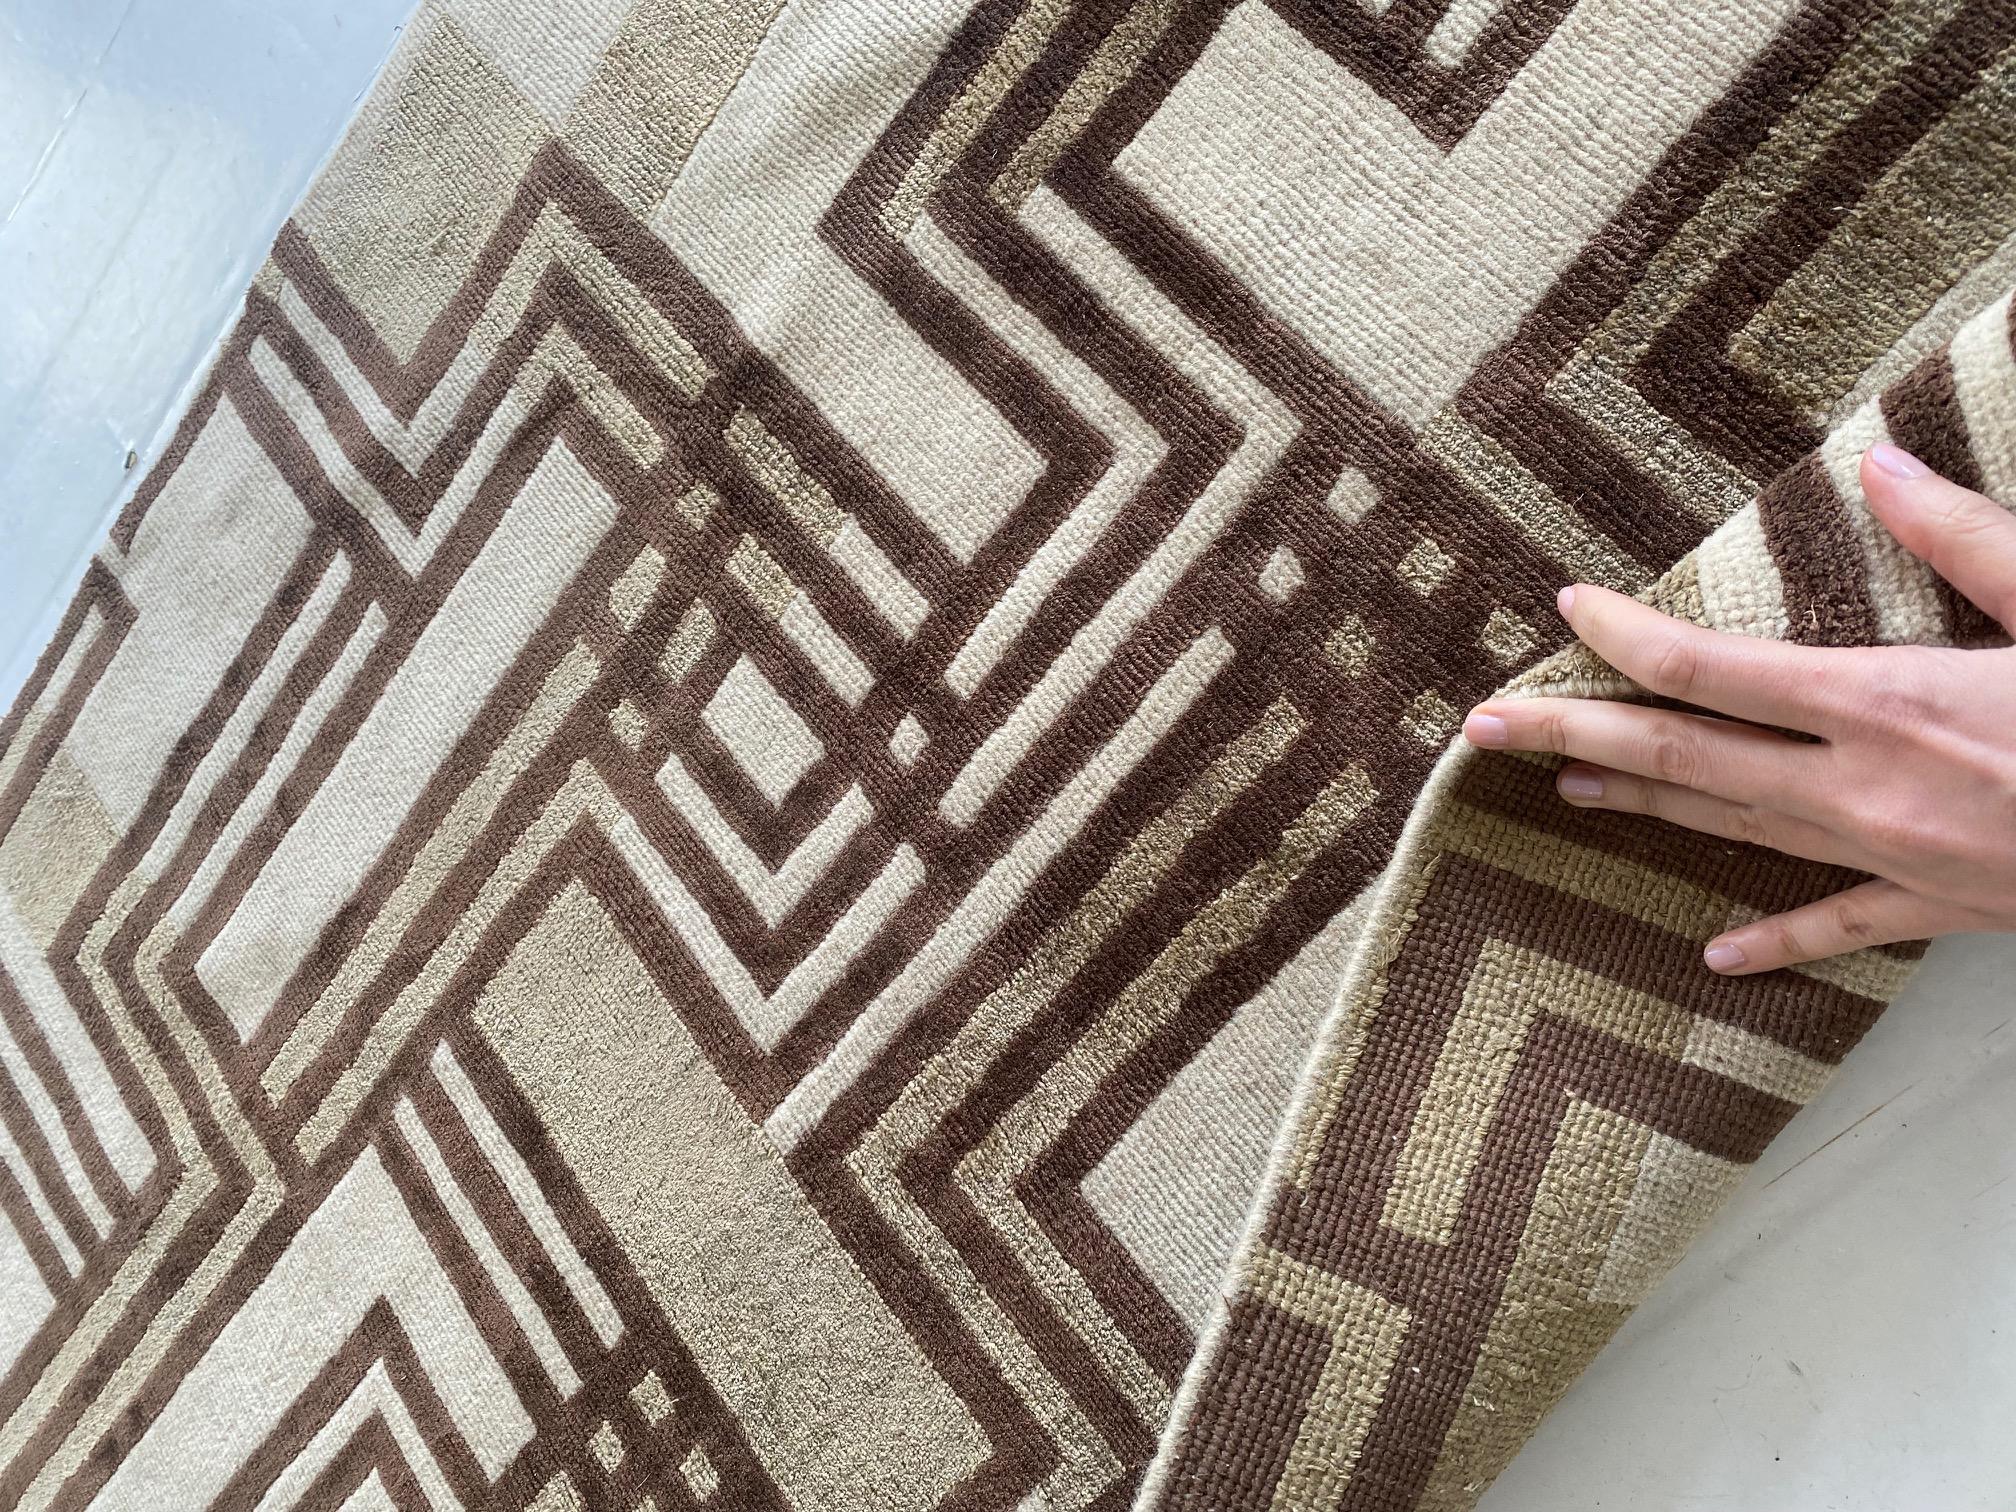 Chemin de table géométrique contemporain en laine et soie, long et étroit, de Doris Leslie Blau
Taille : 2.7